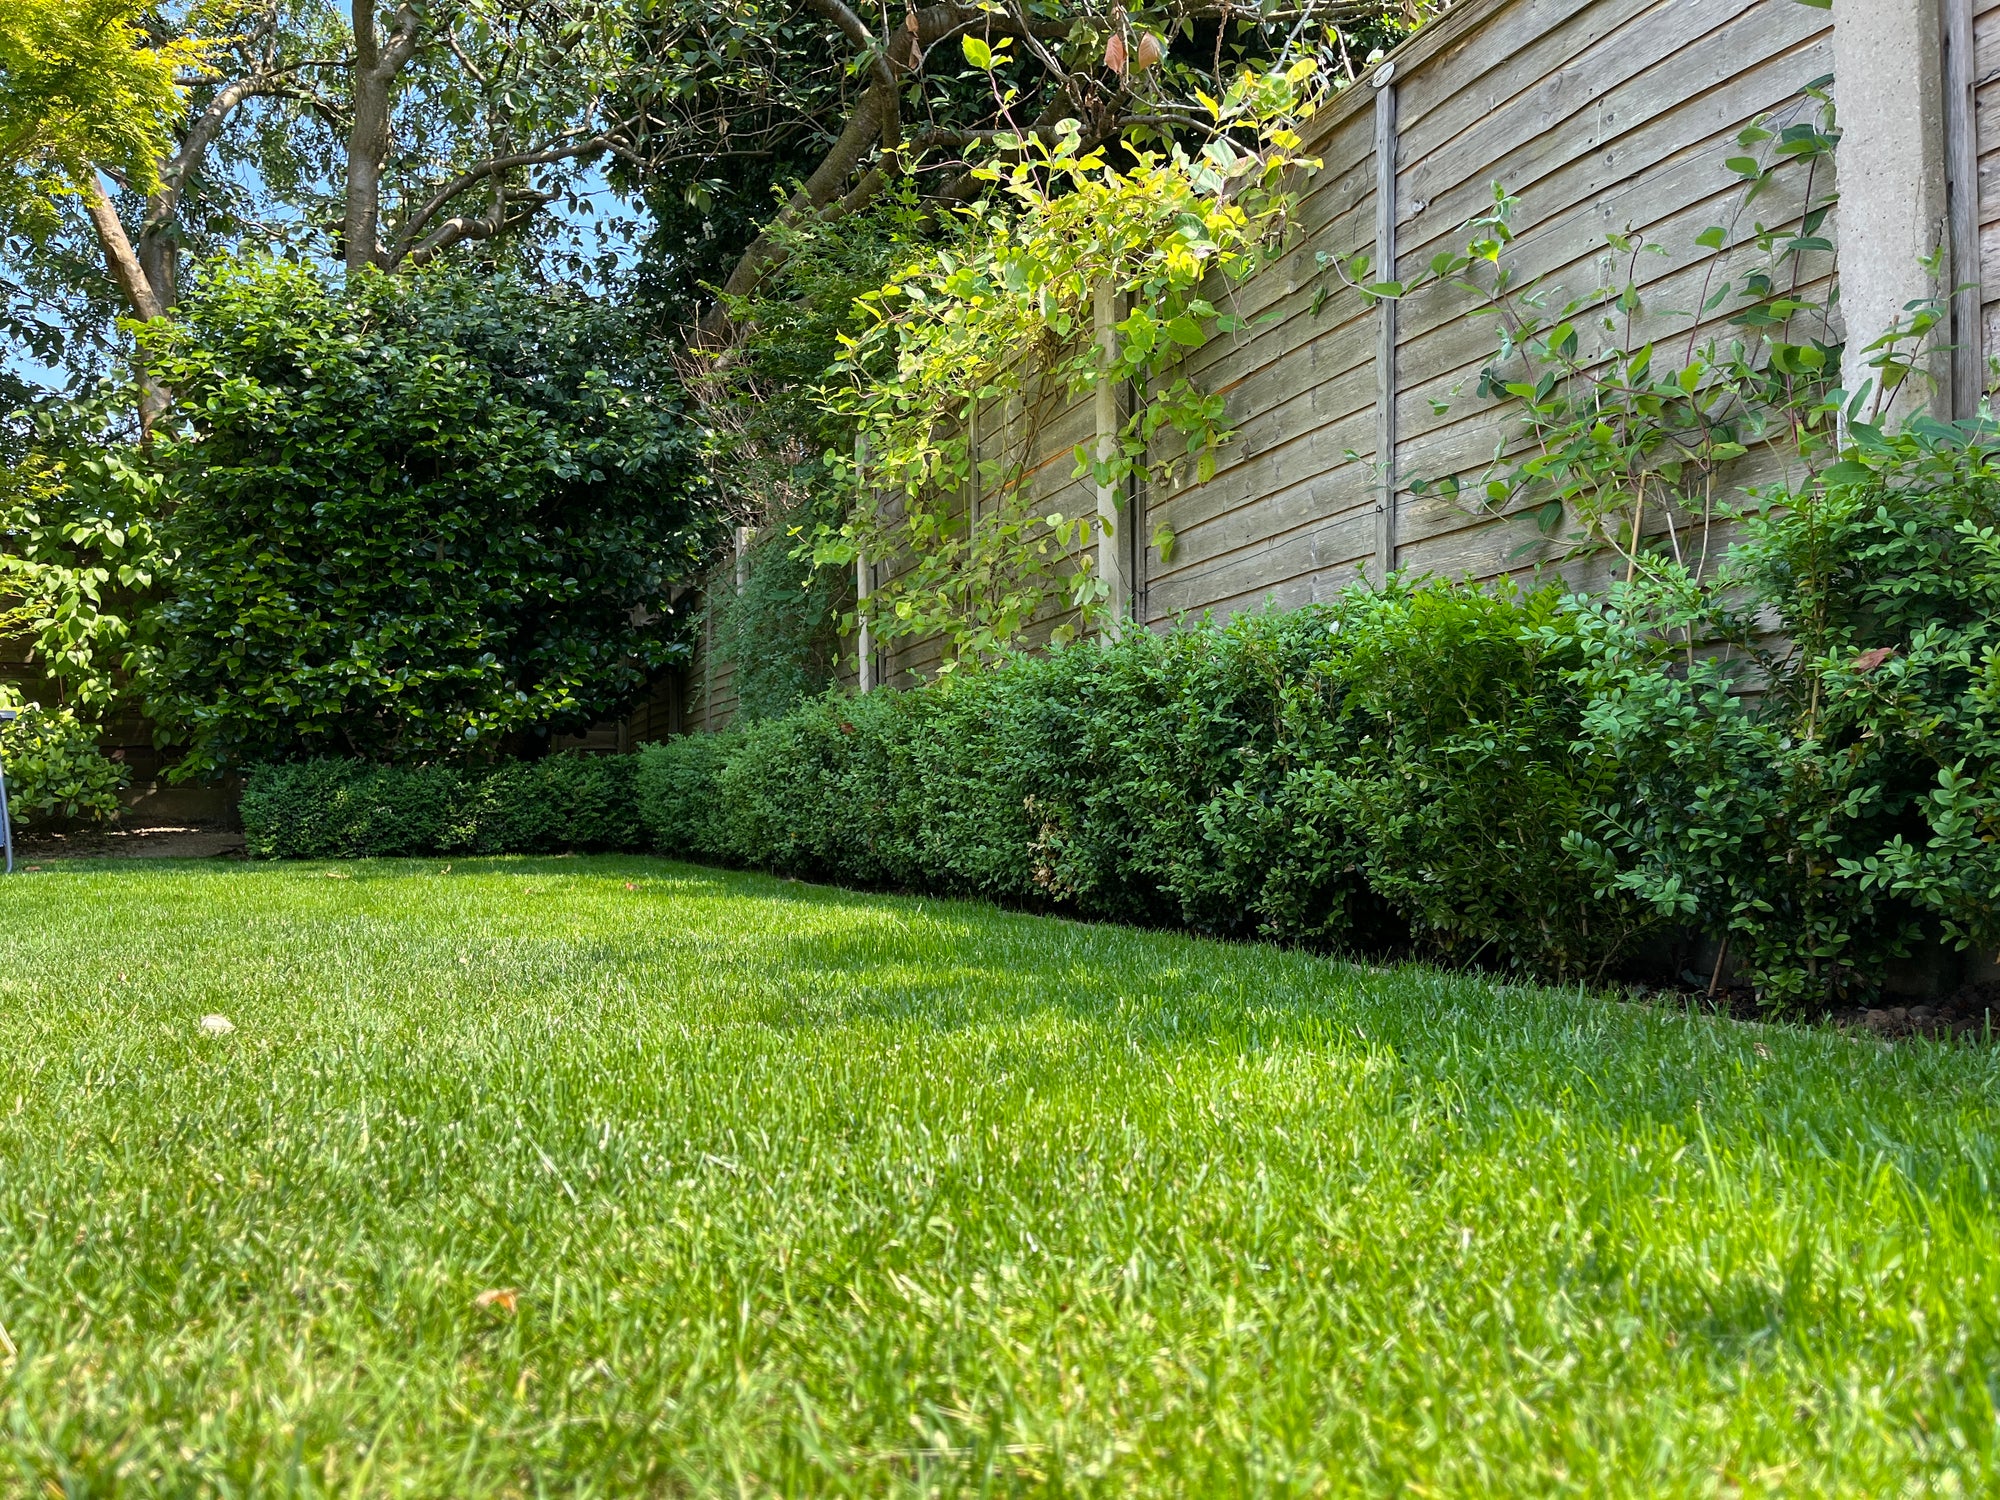 How do lawn fertilisers work in a heatwave?